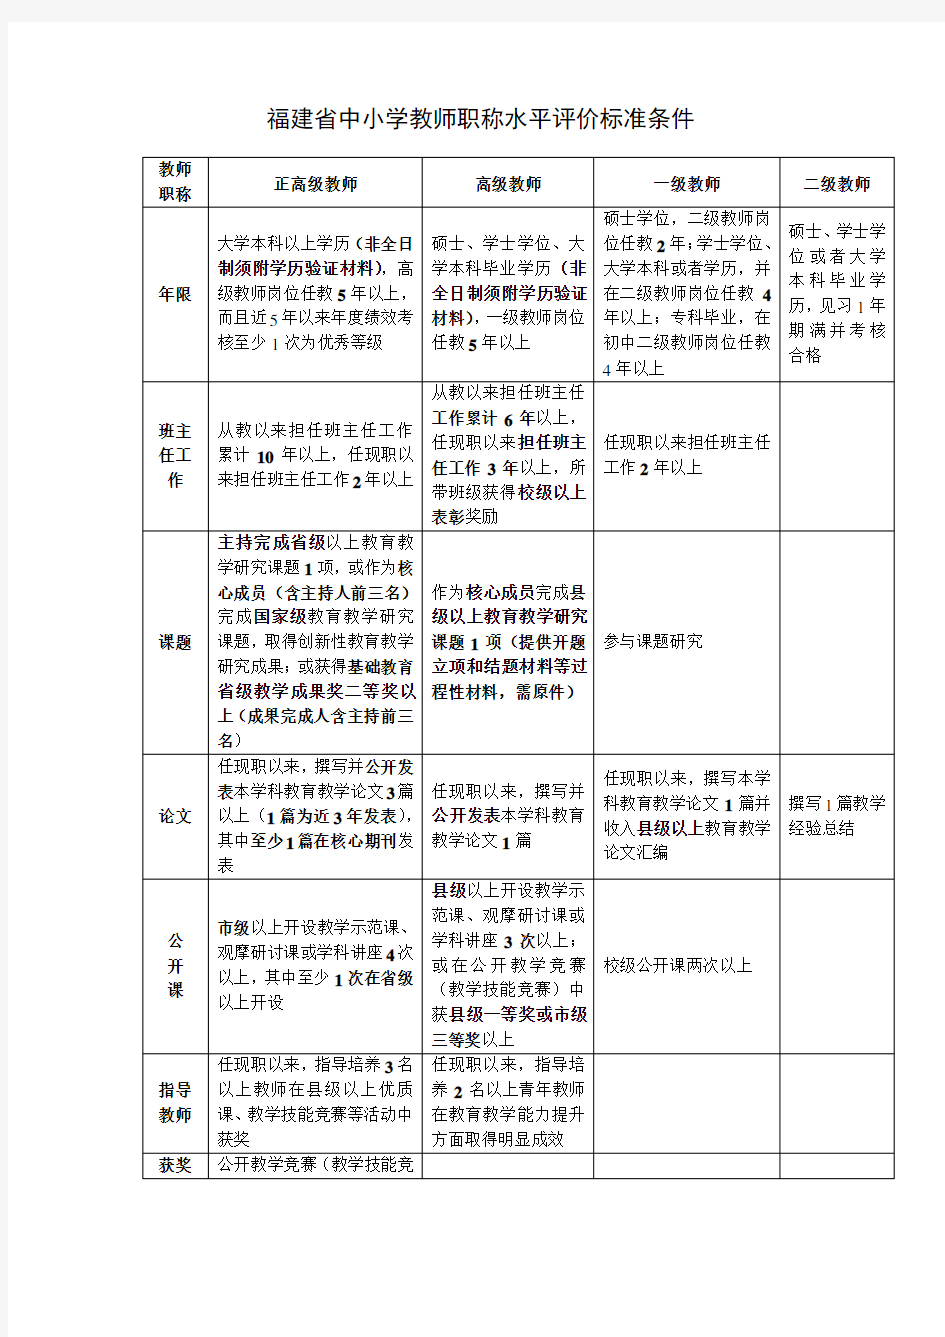 福建省(含厦门市)中小学教师职称水平评价标准条件(2016.6.27)